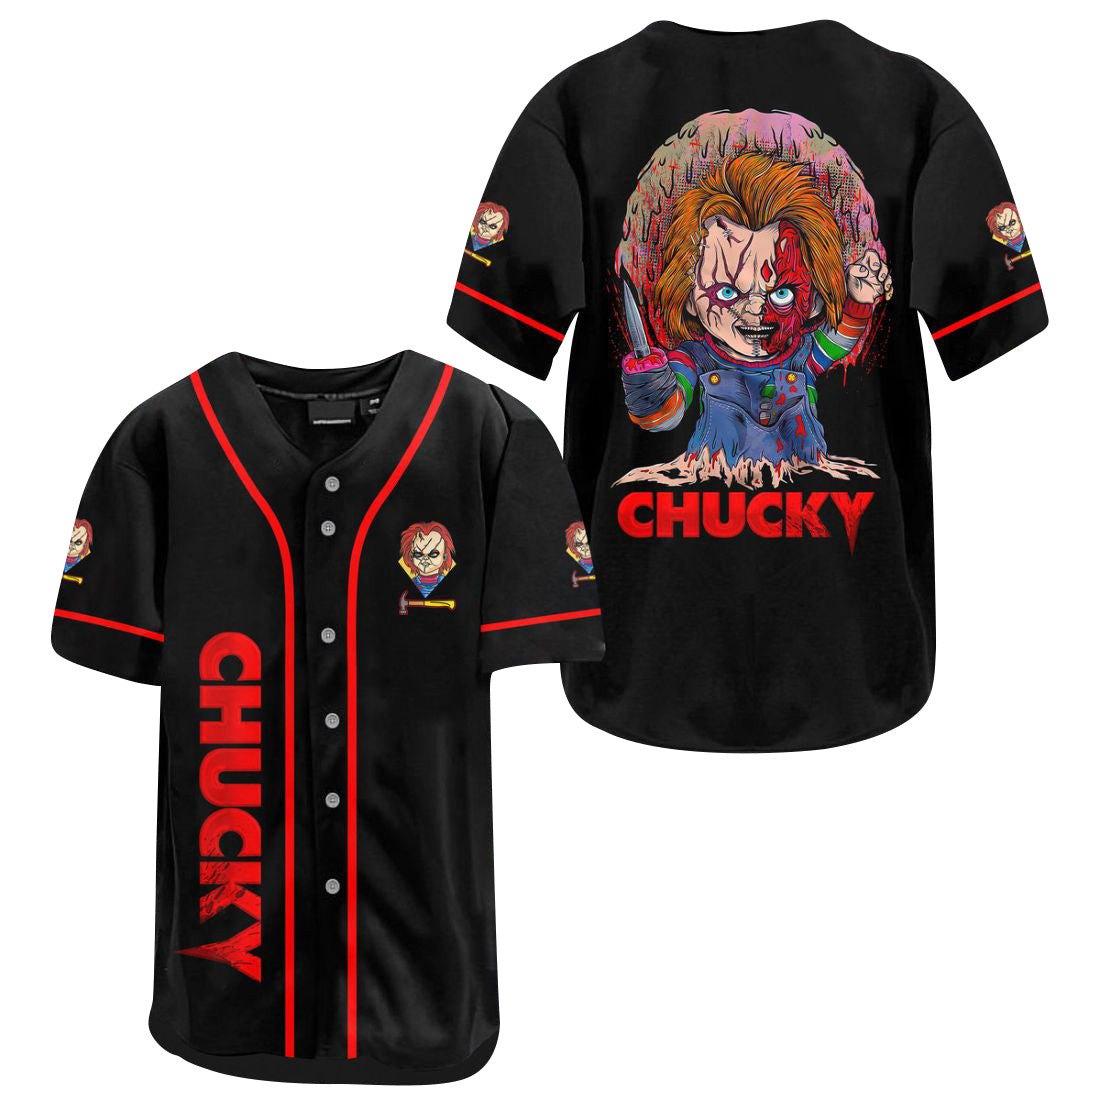 Halloween Horror Chucky Killer Doll Jersey Shirt, Unisex Baseball Jersey for Men Women